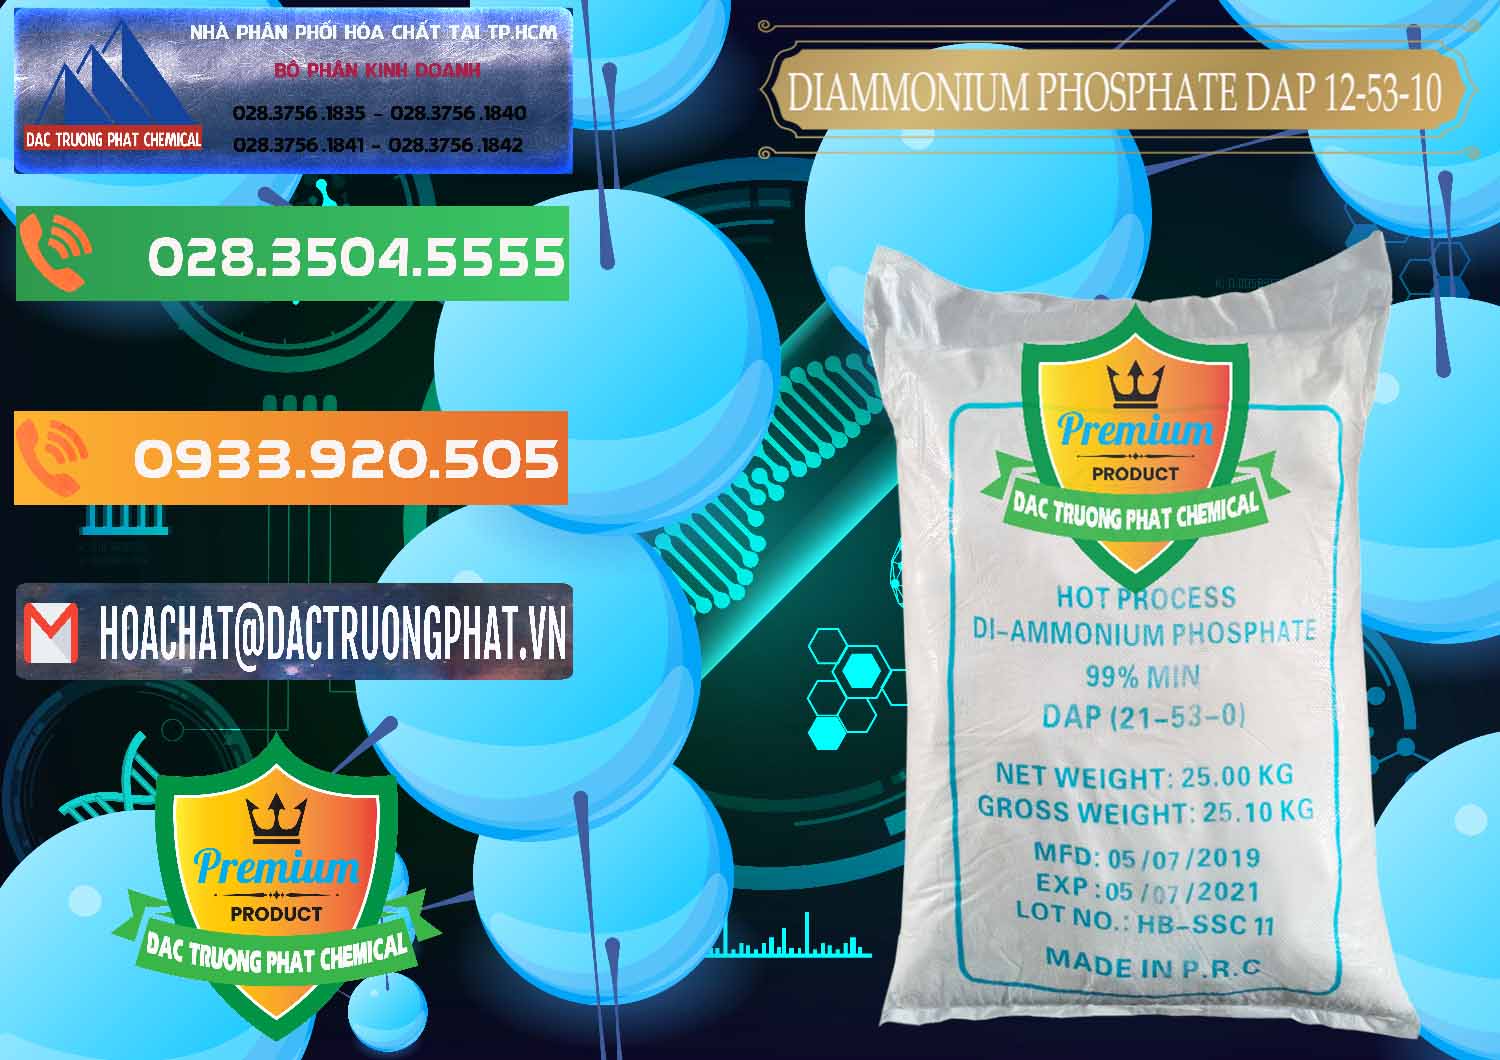 Nhà cung cấp và bán DAP - Diammonium Phosphate Trung Quốc China - 0319 - Nơi chuyên cung ứng ( phân phối ) hóa chất tại TP.HCM - hoachatxulynuoc.com.vn